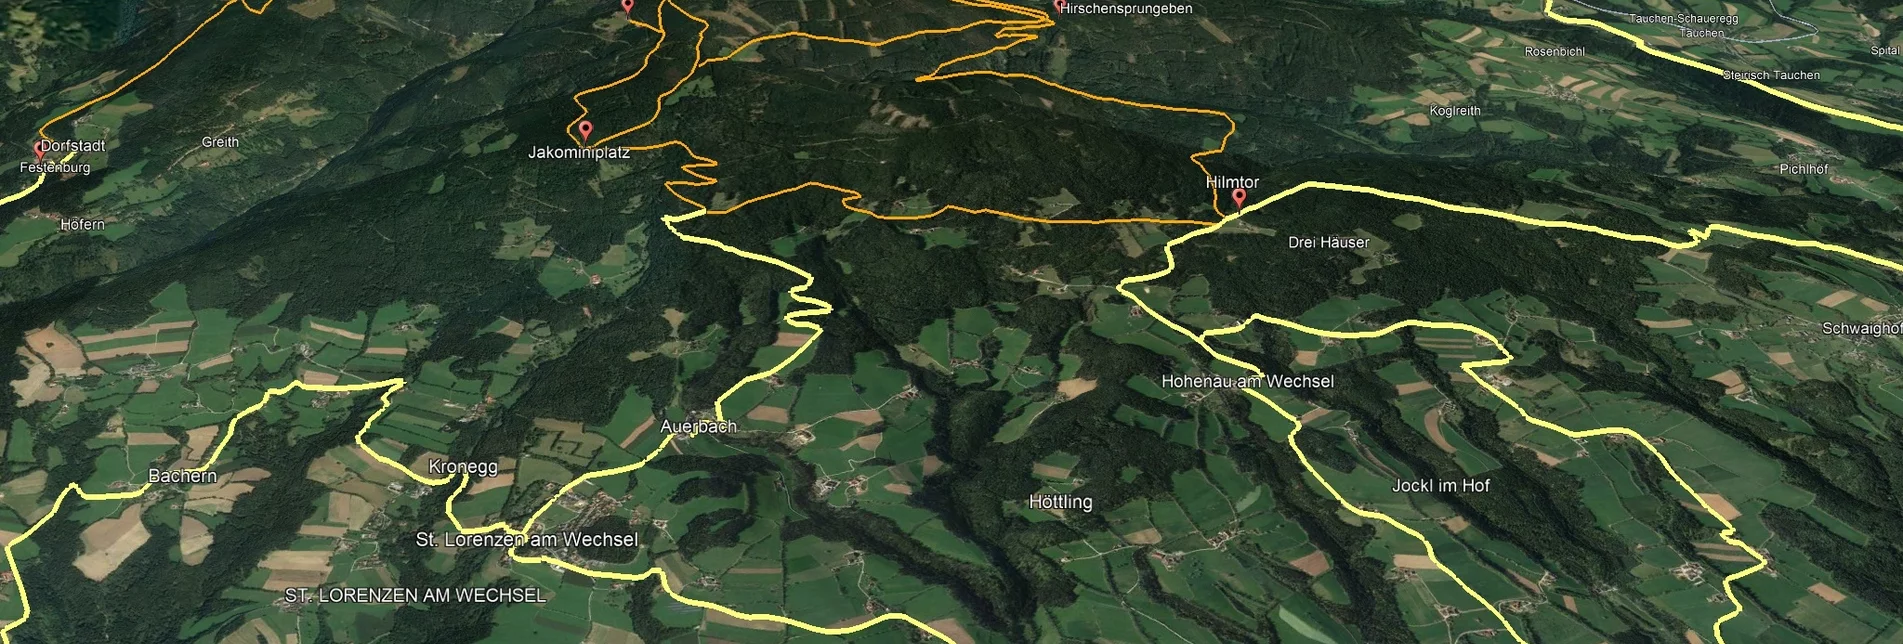 Mountainbike Steirische Wexl Trails - Dorfstatt Route - Touren-Impression #1 | © Verein Tourismusentwicklung Steirischer Wechsel